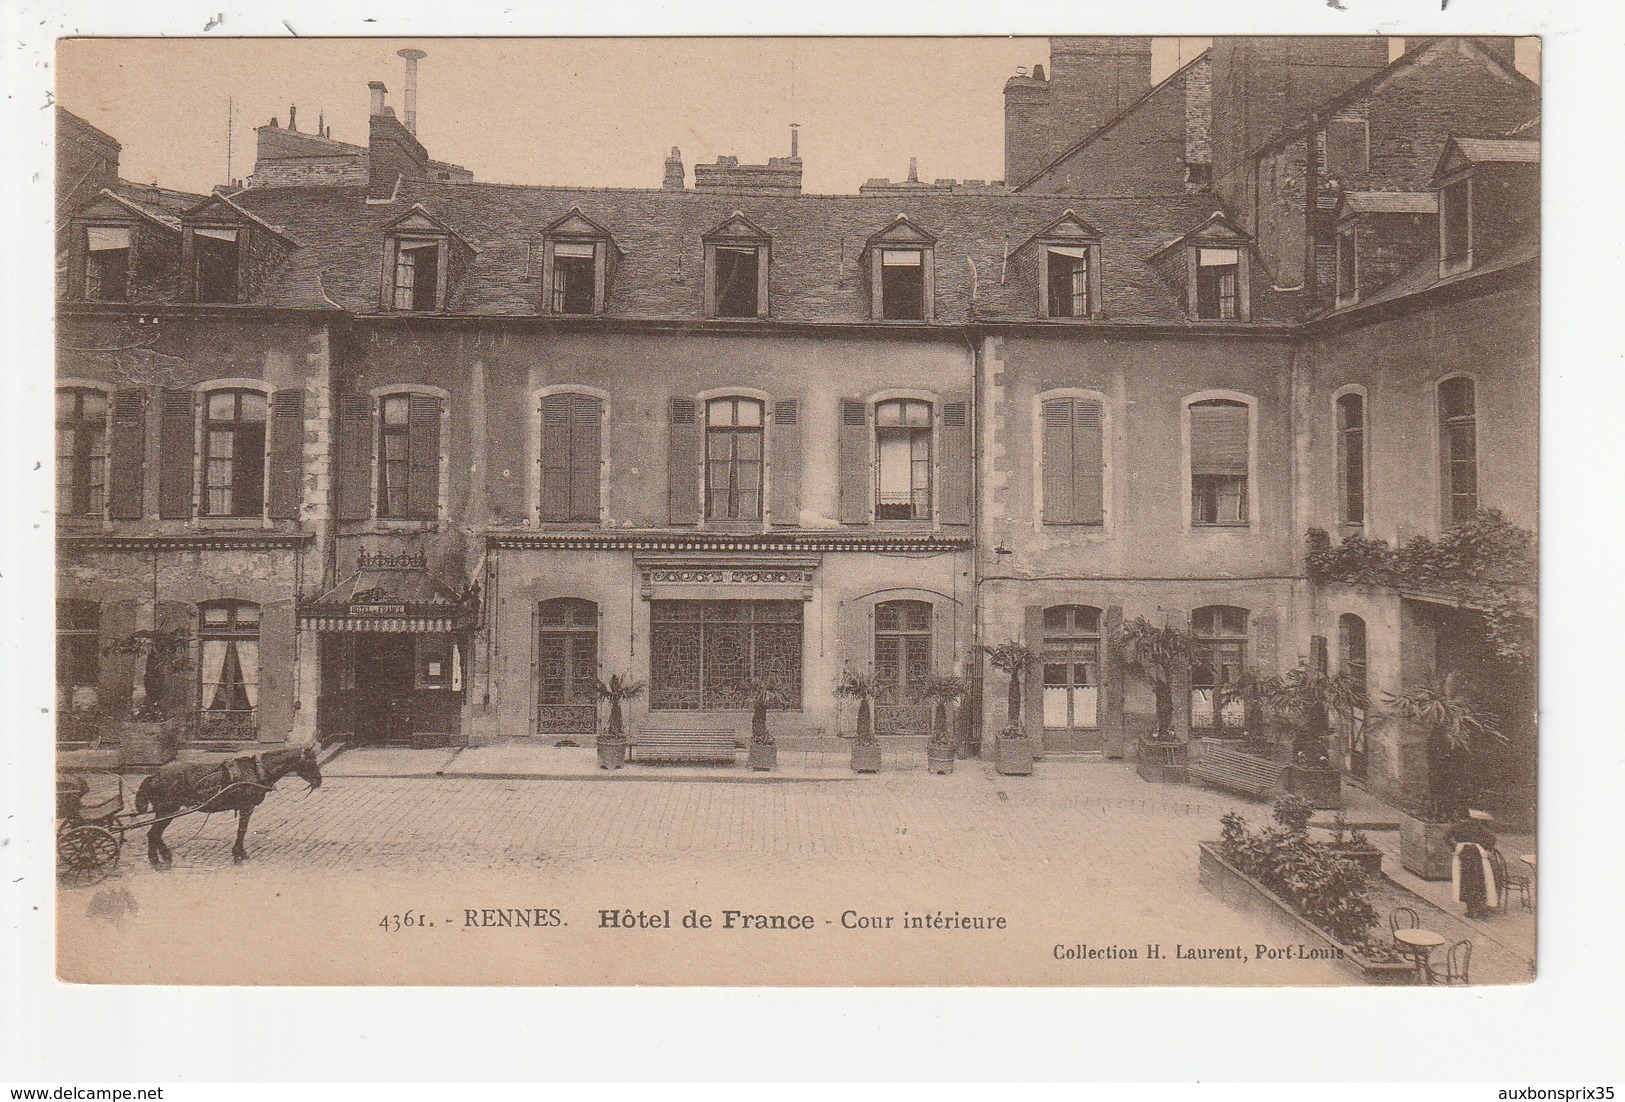 RENNES - HOTEL DE FRANCE - COUR INTERIEURE - 35 - Rennes